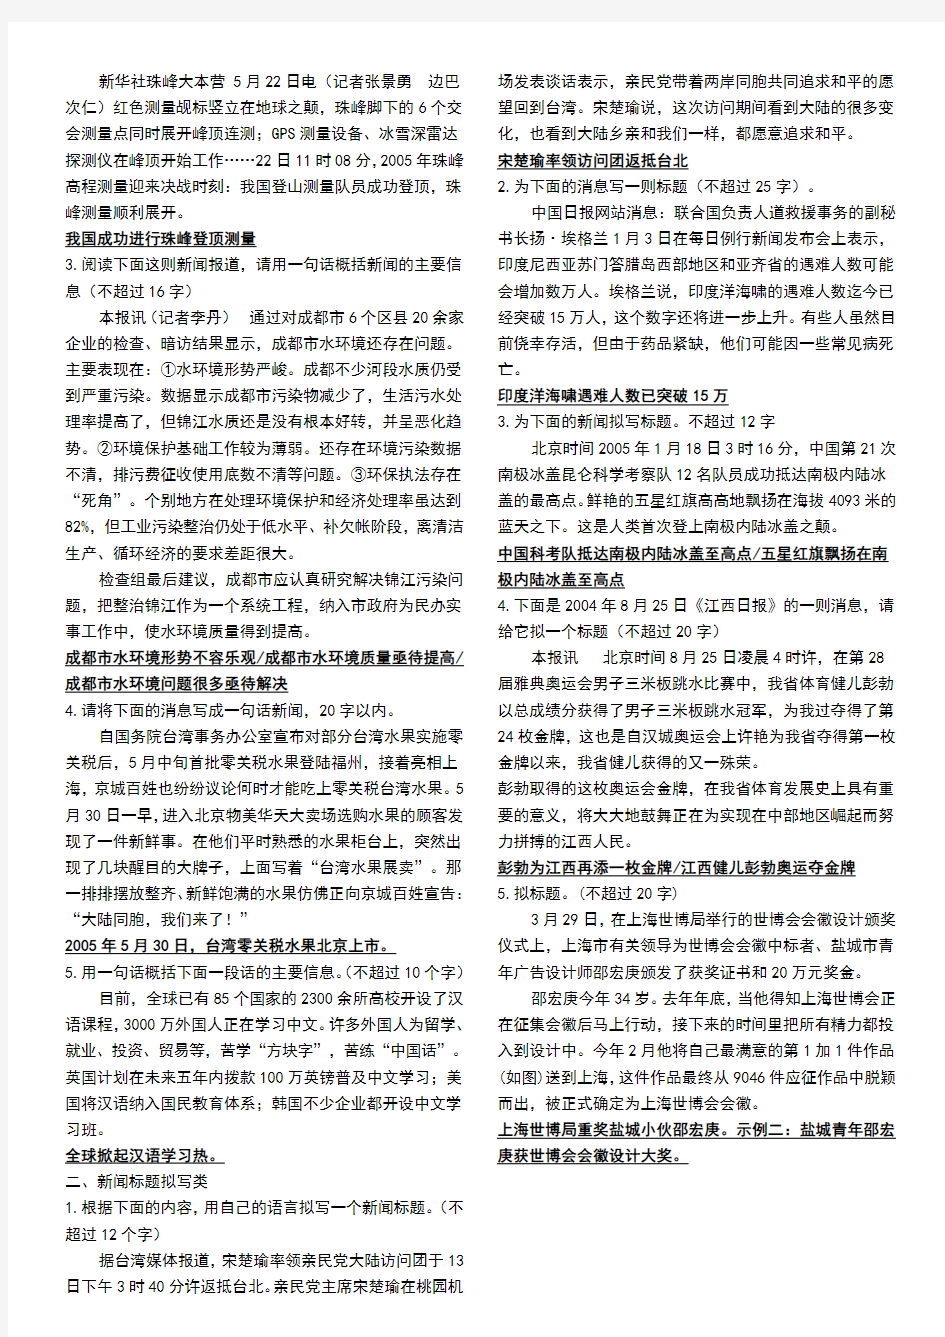 初中语文新闻概括题解题思路及题目